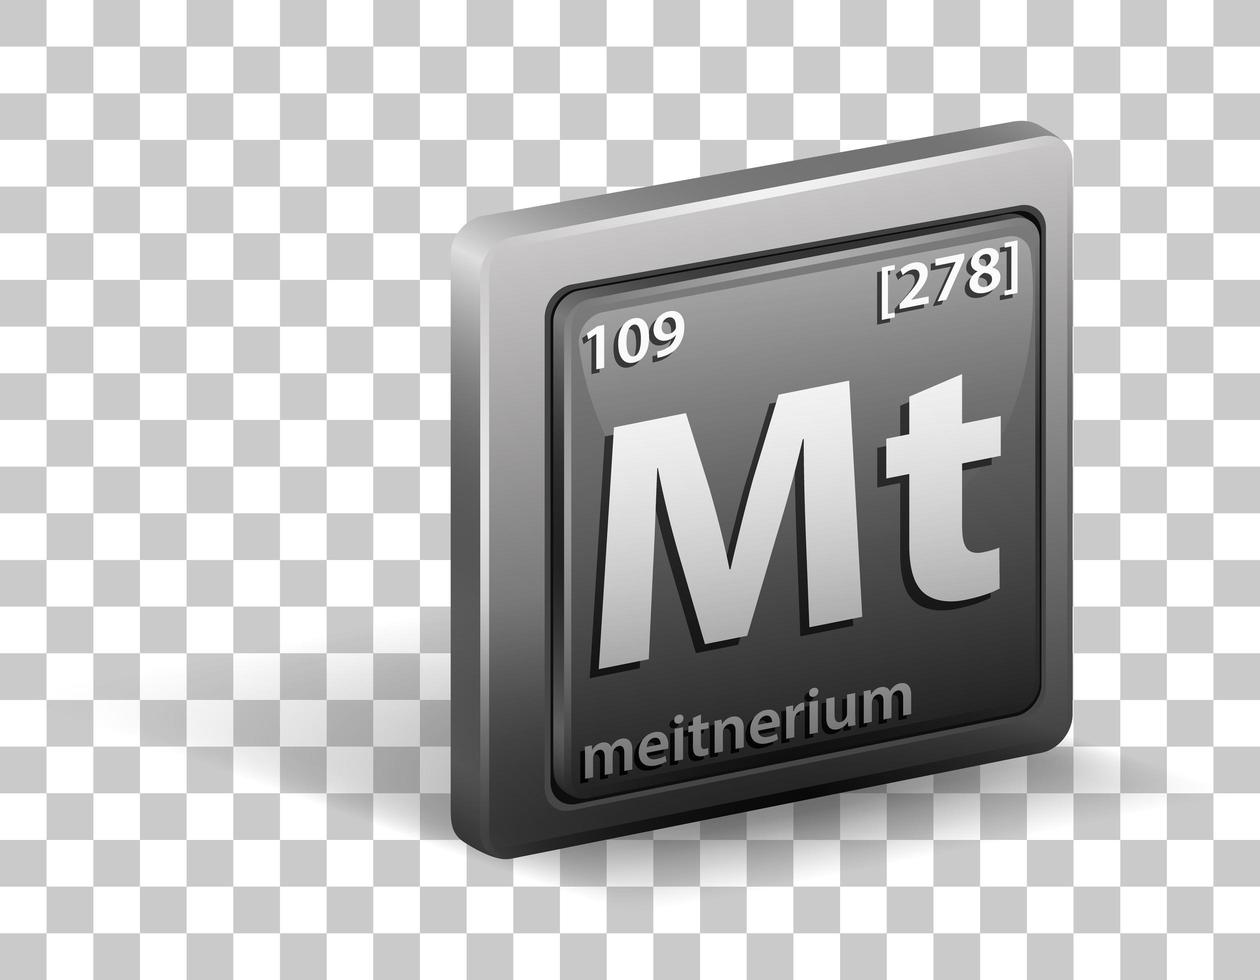 meitnerium kemiskt grundämne. kemisk symbol med atomnummer och atommassa. vektor